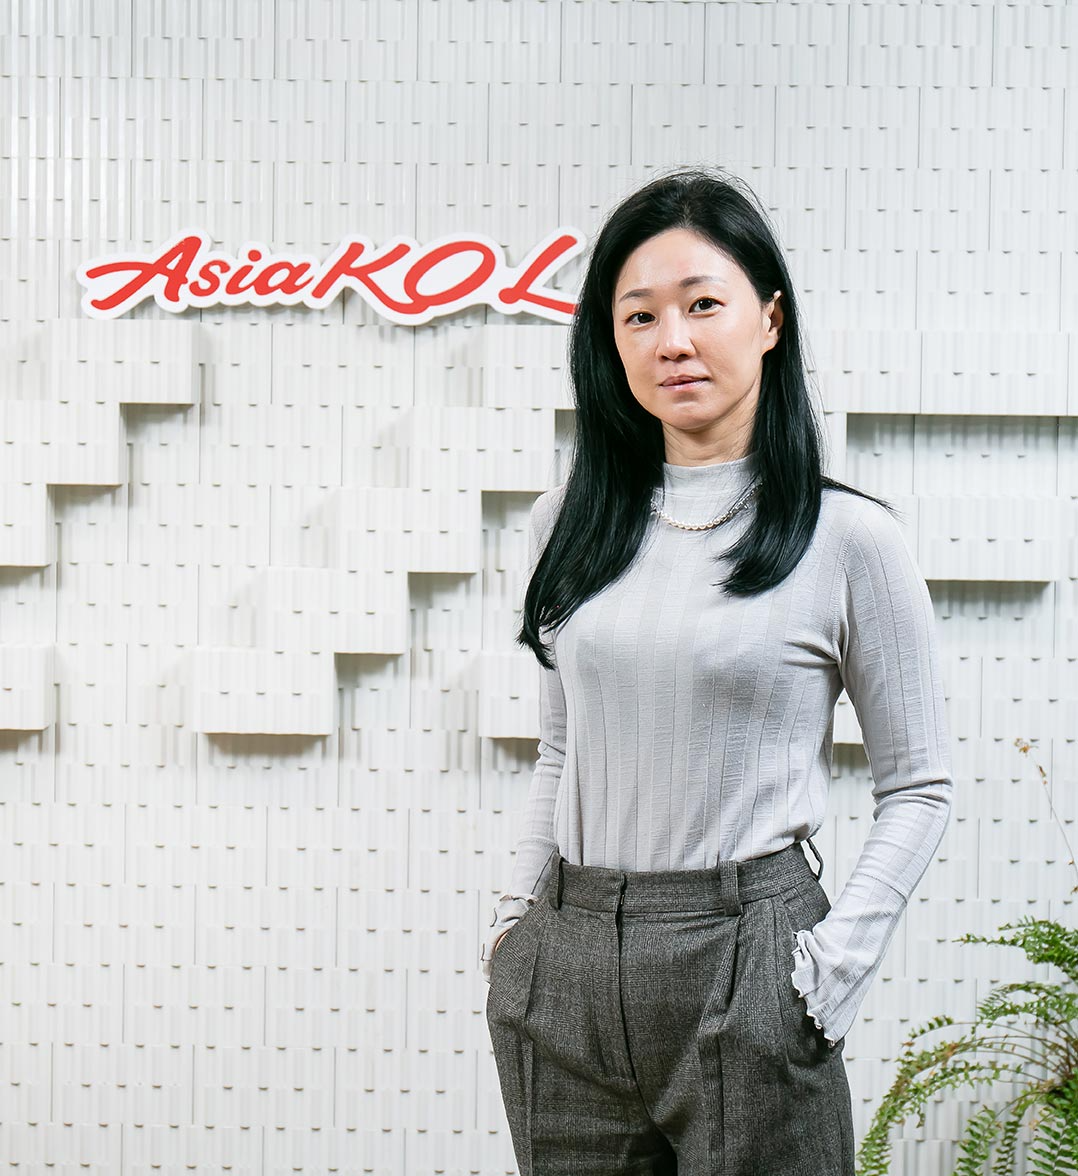 以大數據分析資料庫為根本，影響力數據顧問公司推出的「AsiaKOL亞洲達人通」，藉由整合系統、串聯10萬名跨國網紅，以及創新且在地的服務，將AsiaKOL打造成為亞洲重要的網紅平台，協助亞洲企業提升跨境銷售的營運績效。